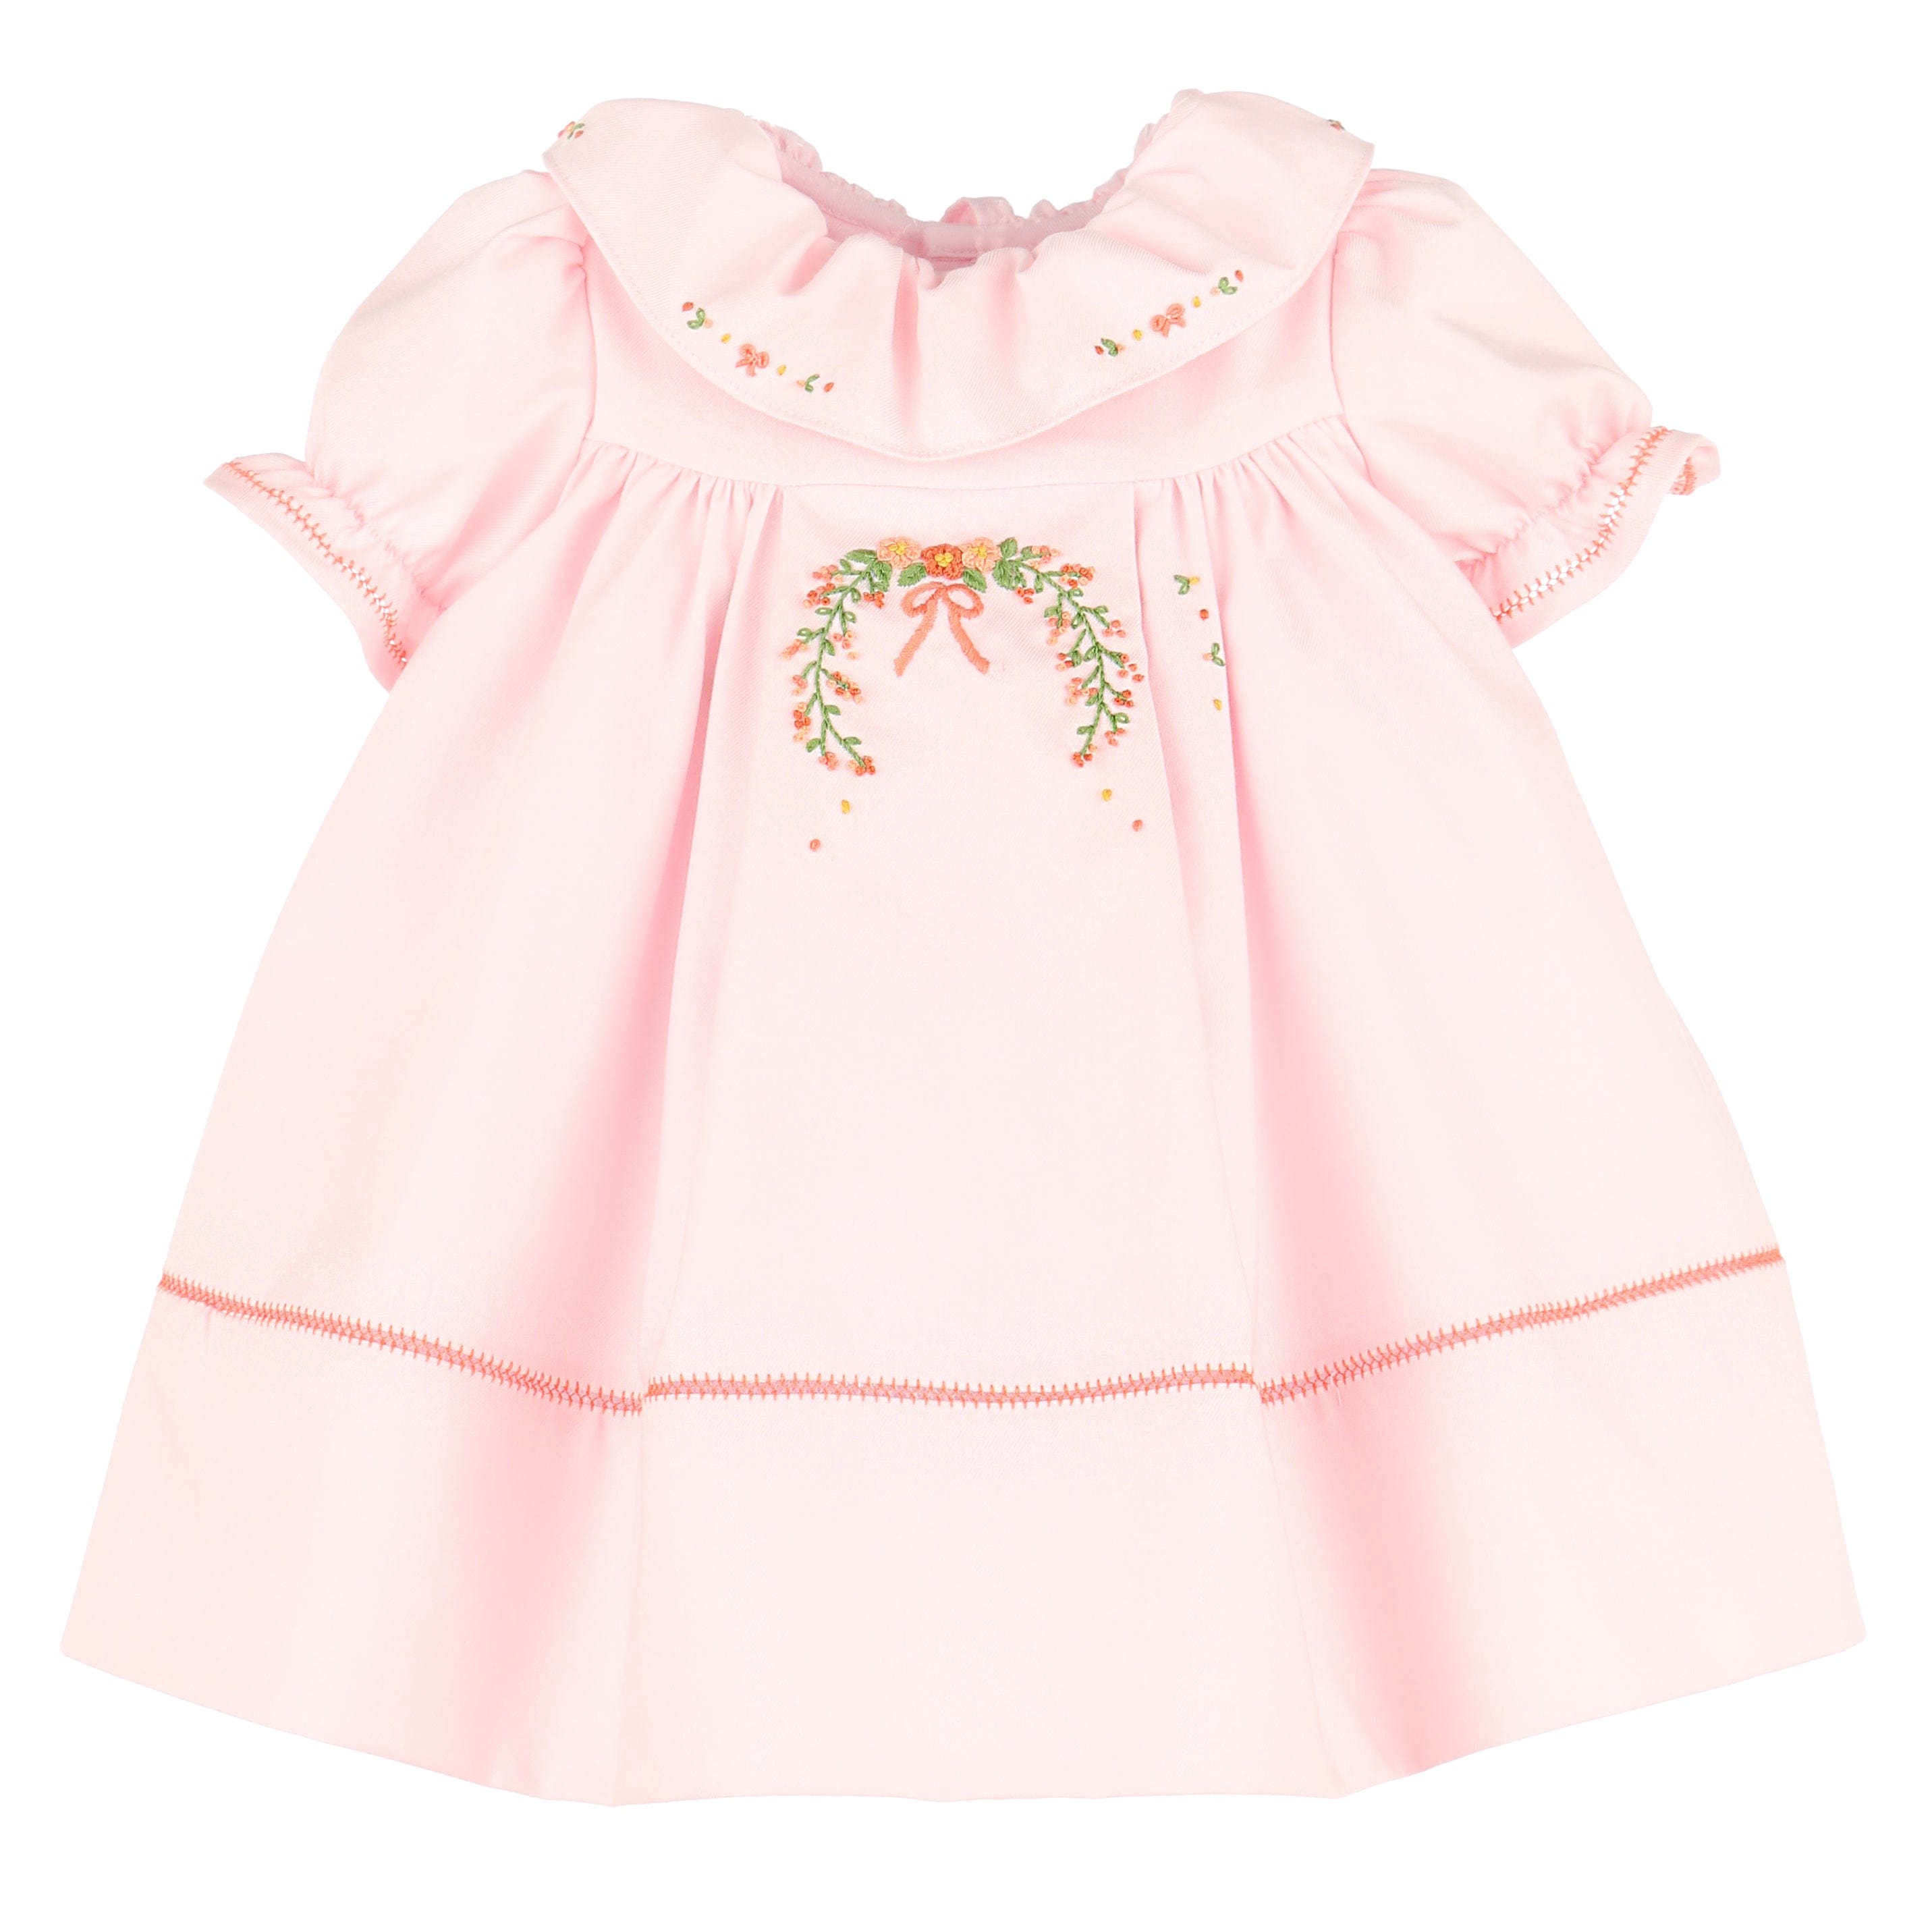 Casero & Associates Casero & Associates Autumn Ruffle Dress - Little Miss Muffin Children & Home